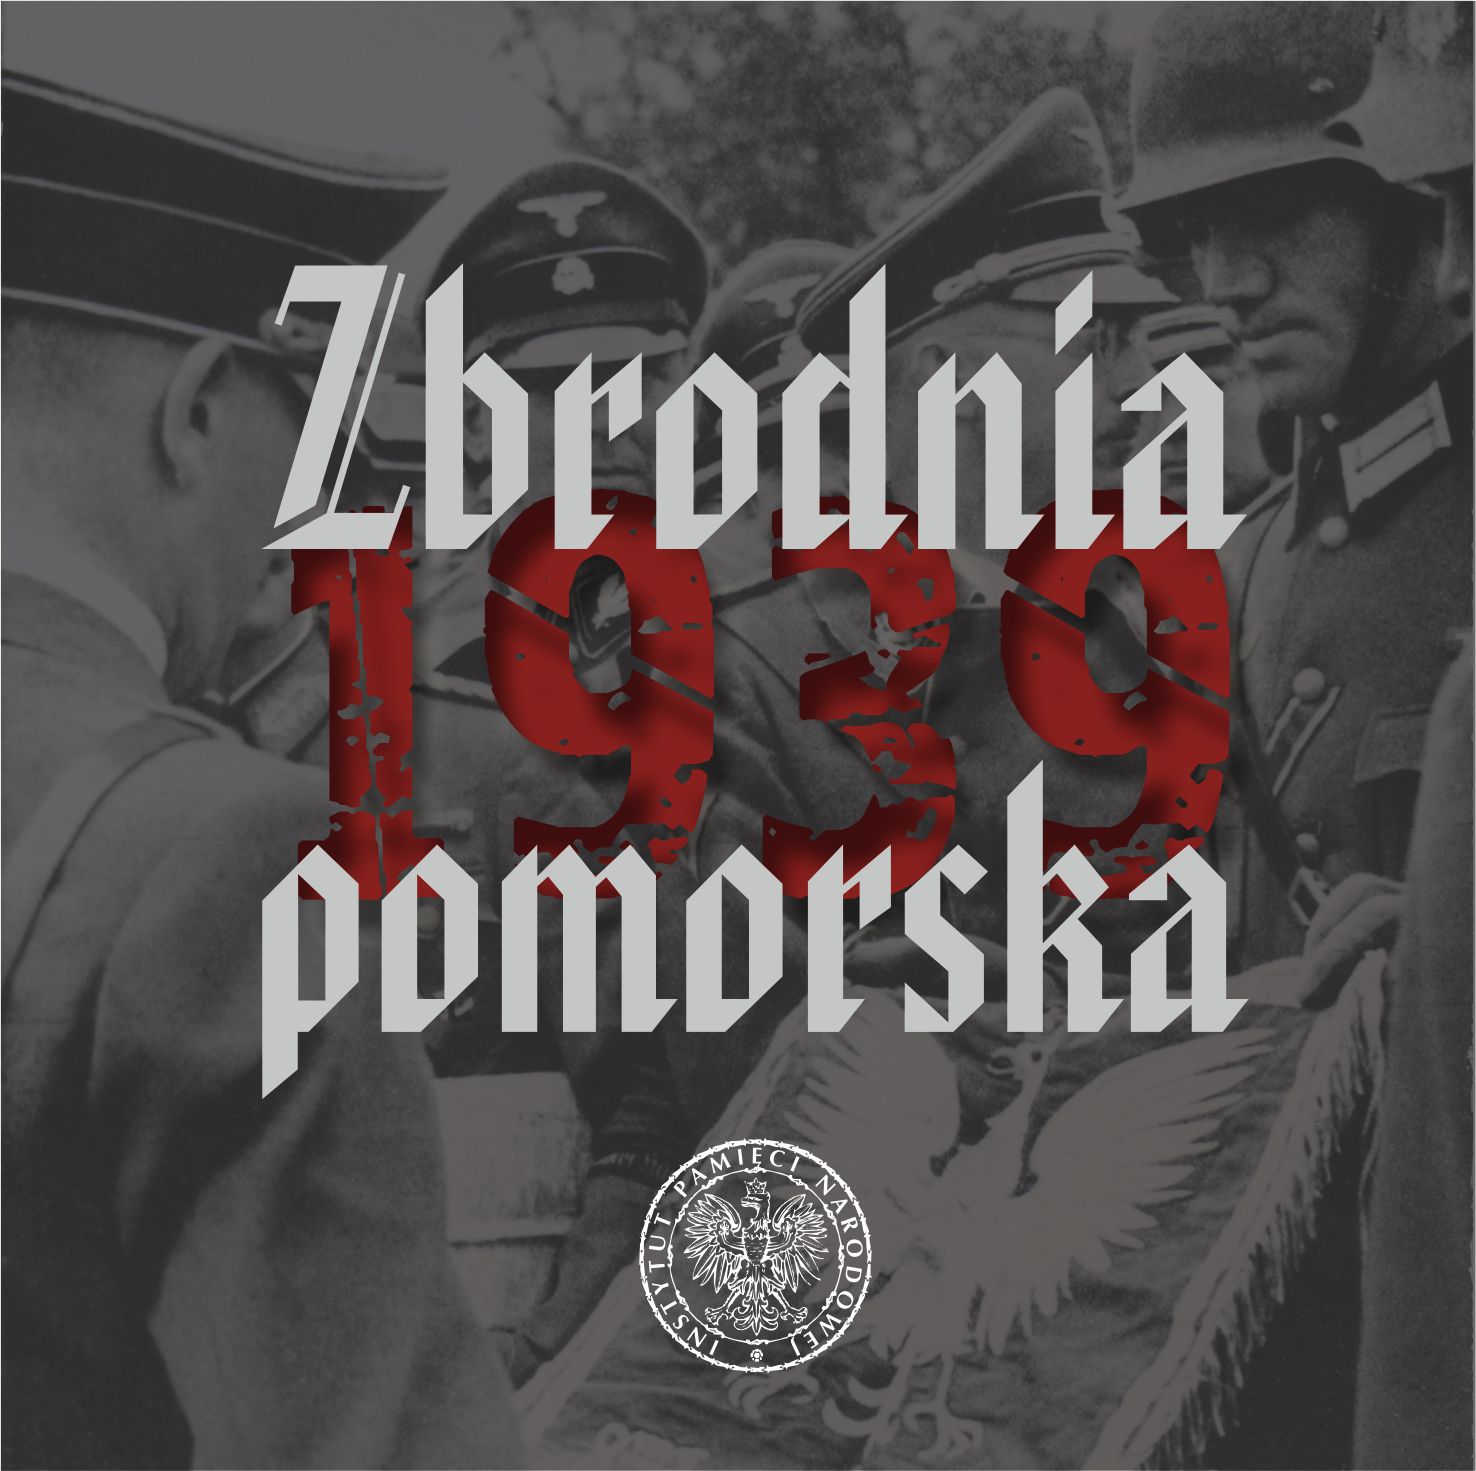 Okładka płyty "Zbrodnia pomorska 1939"